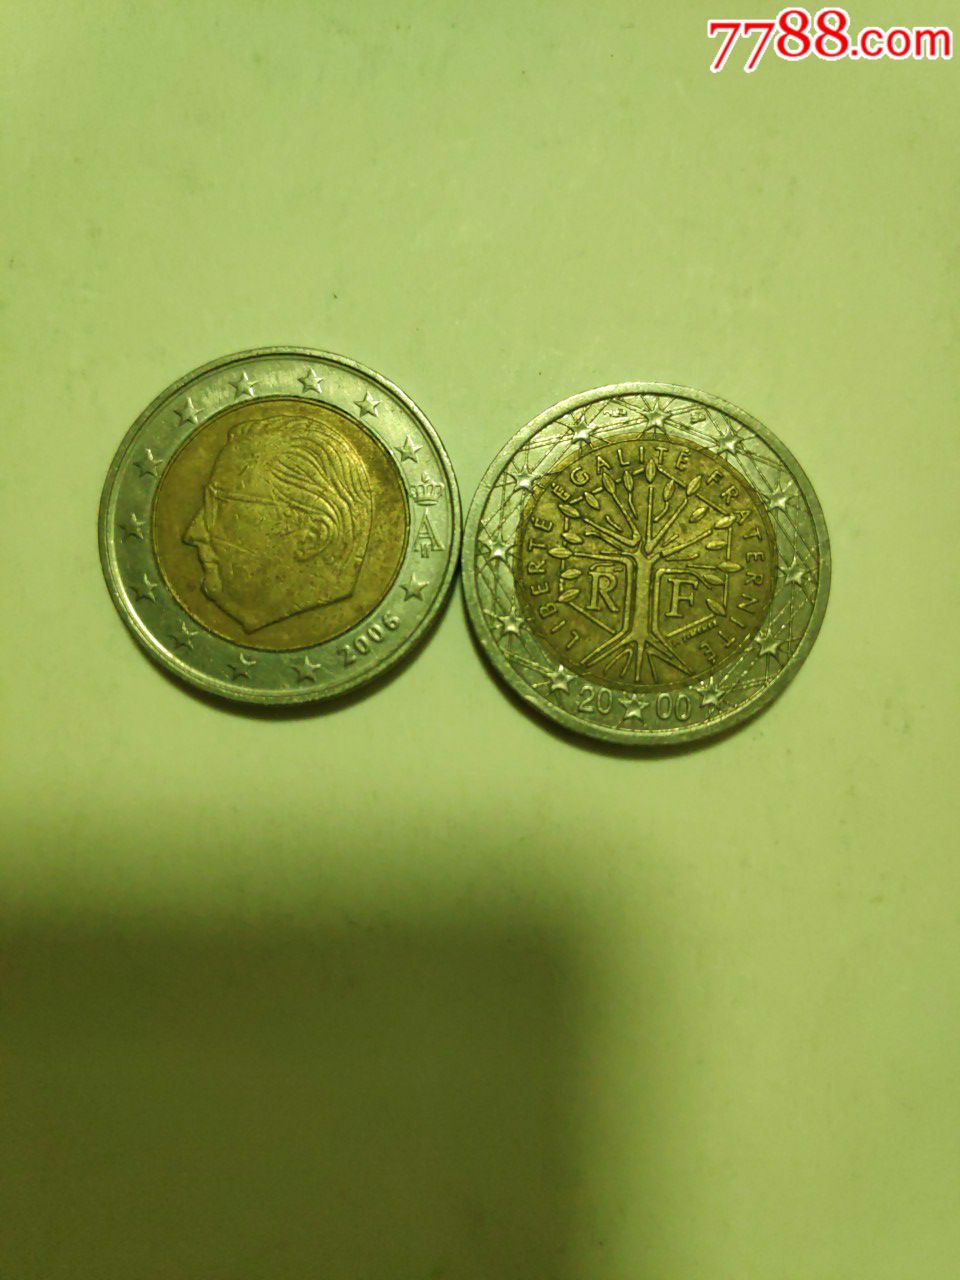 2欧元双色硬币